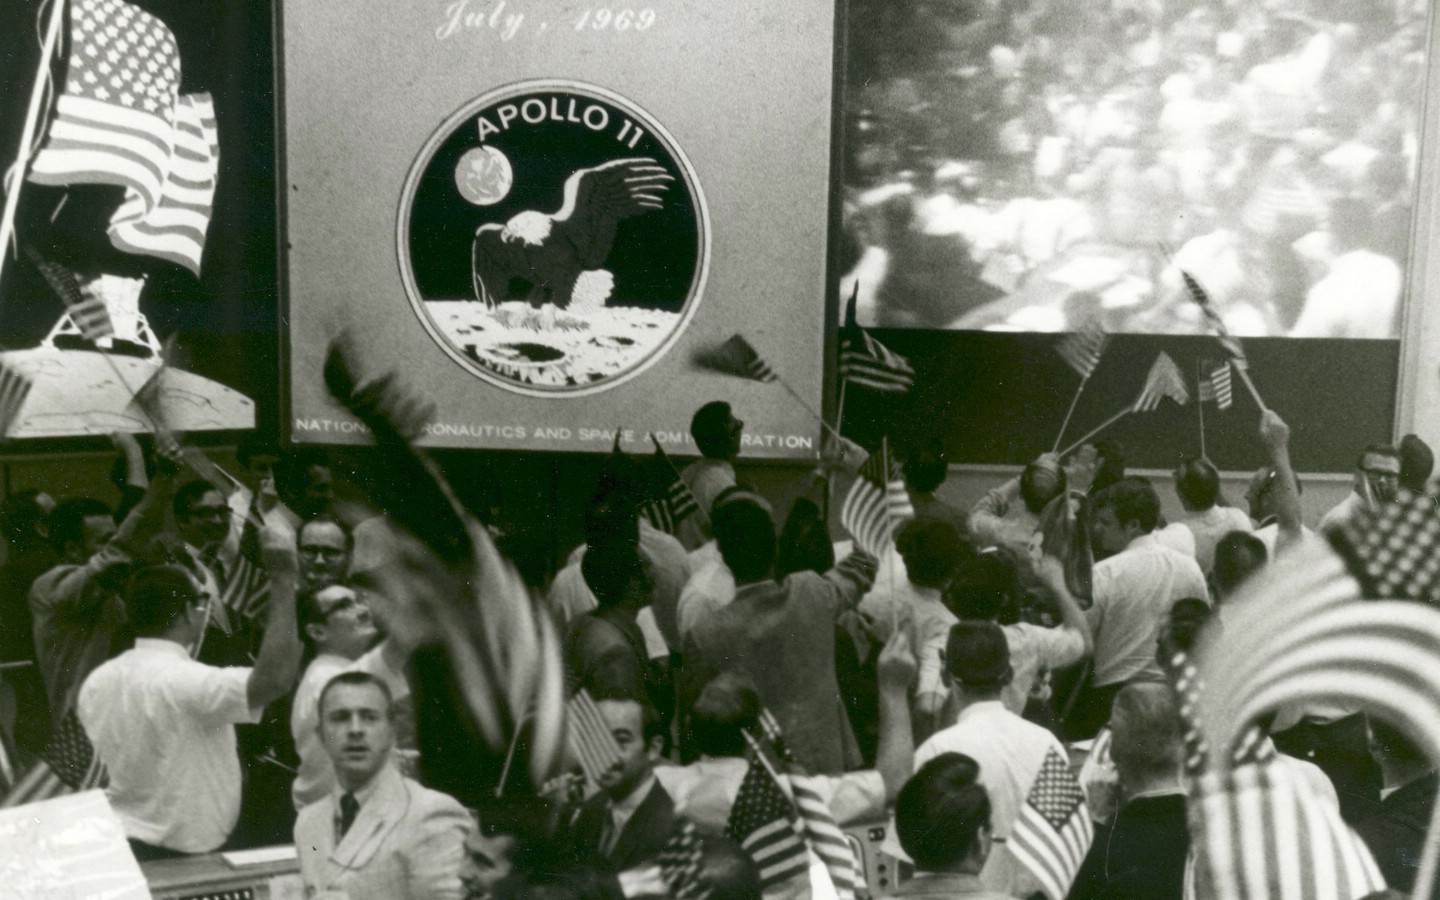 壁纸1440x900阿波罗11珍贵照片壁纸壁纸 阿波罗11珍贵照片壁纸壁纸 阿波罗11珍贵照片壁纸图片 阿波罗11珍贵照片壁纸素材 其他壁纸 其他图库 其他图片素材桌面壁纸